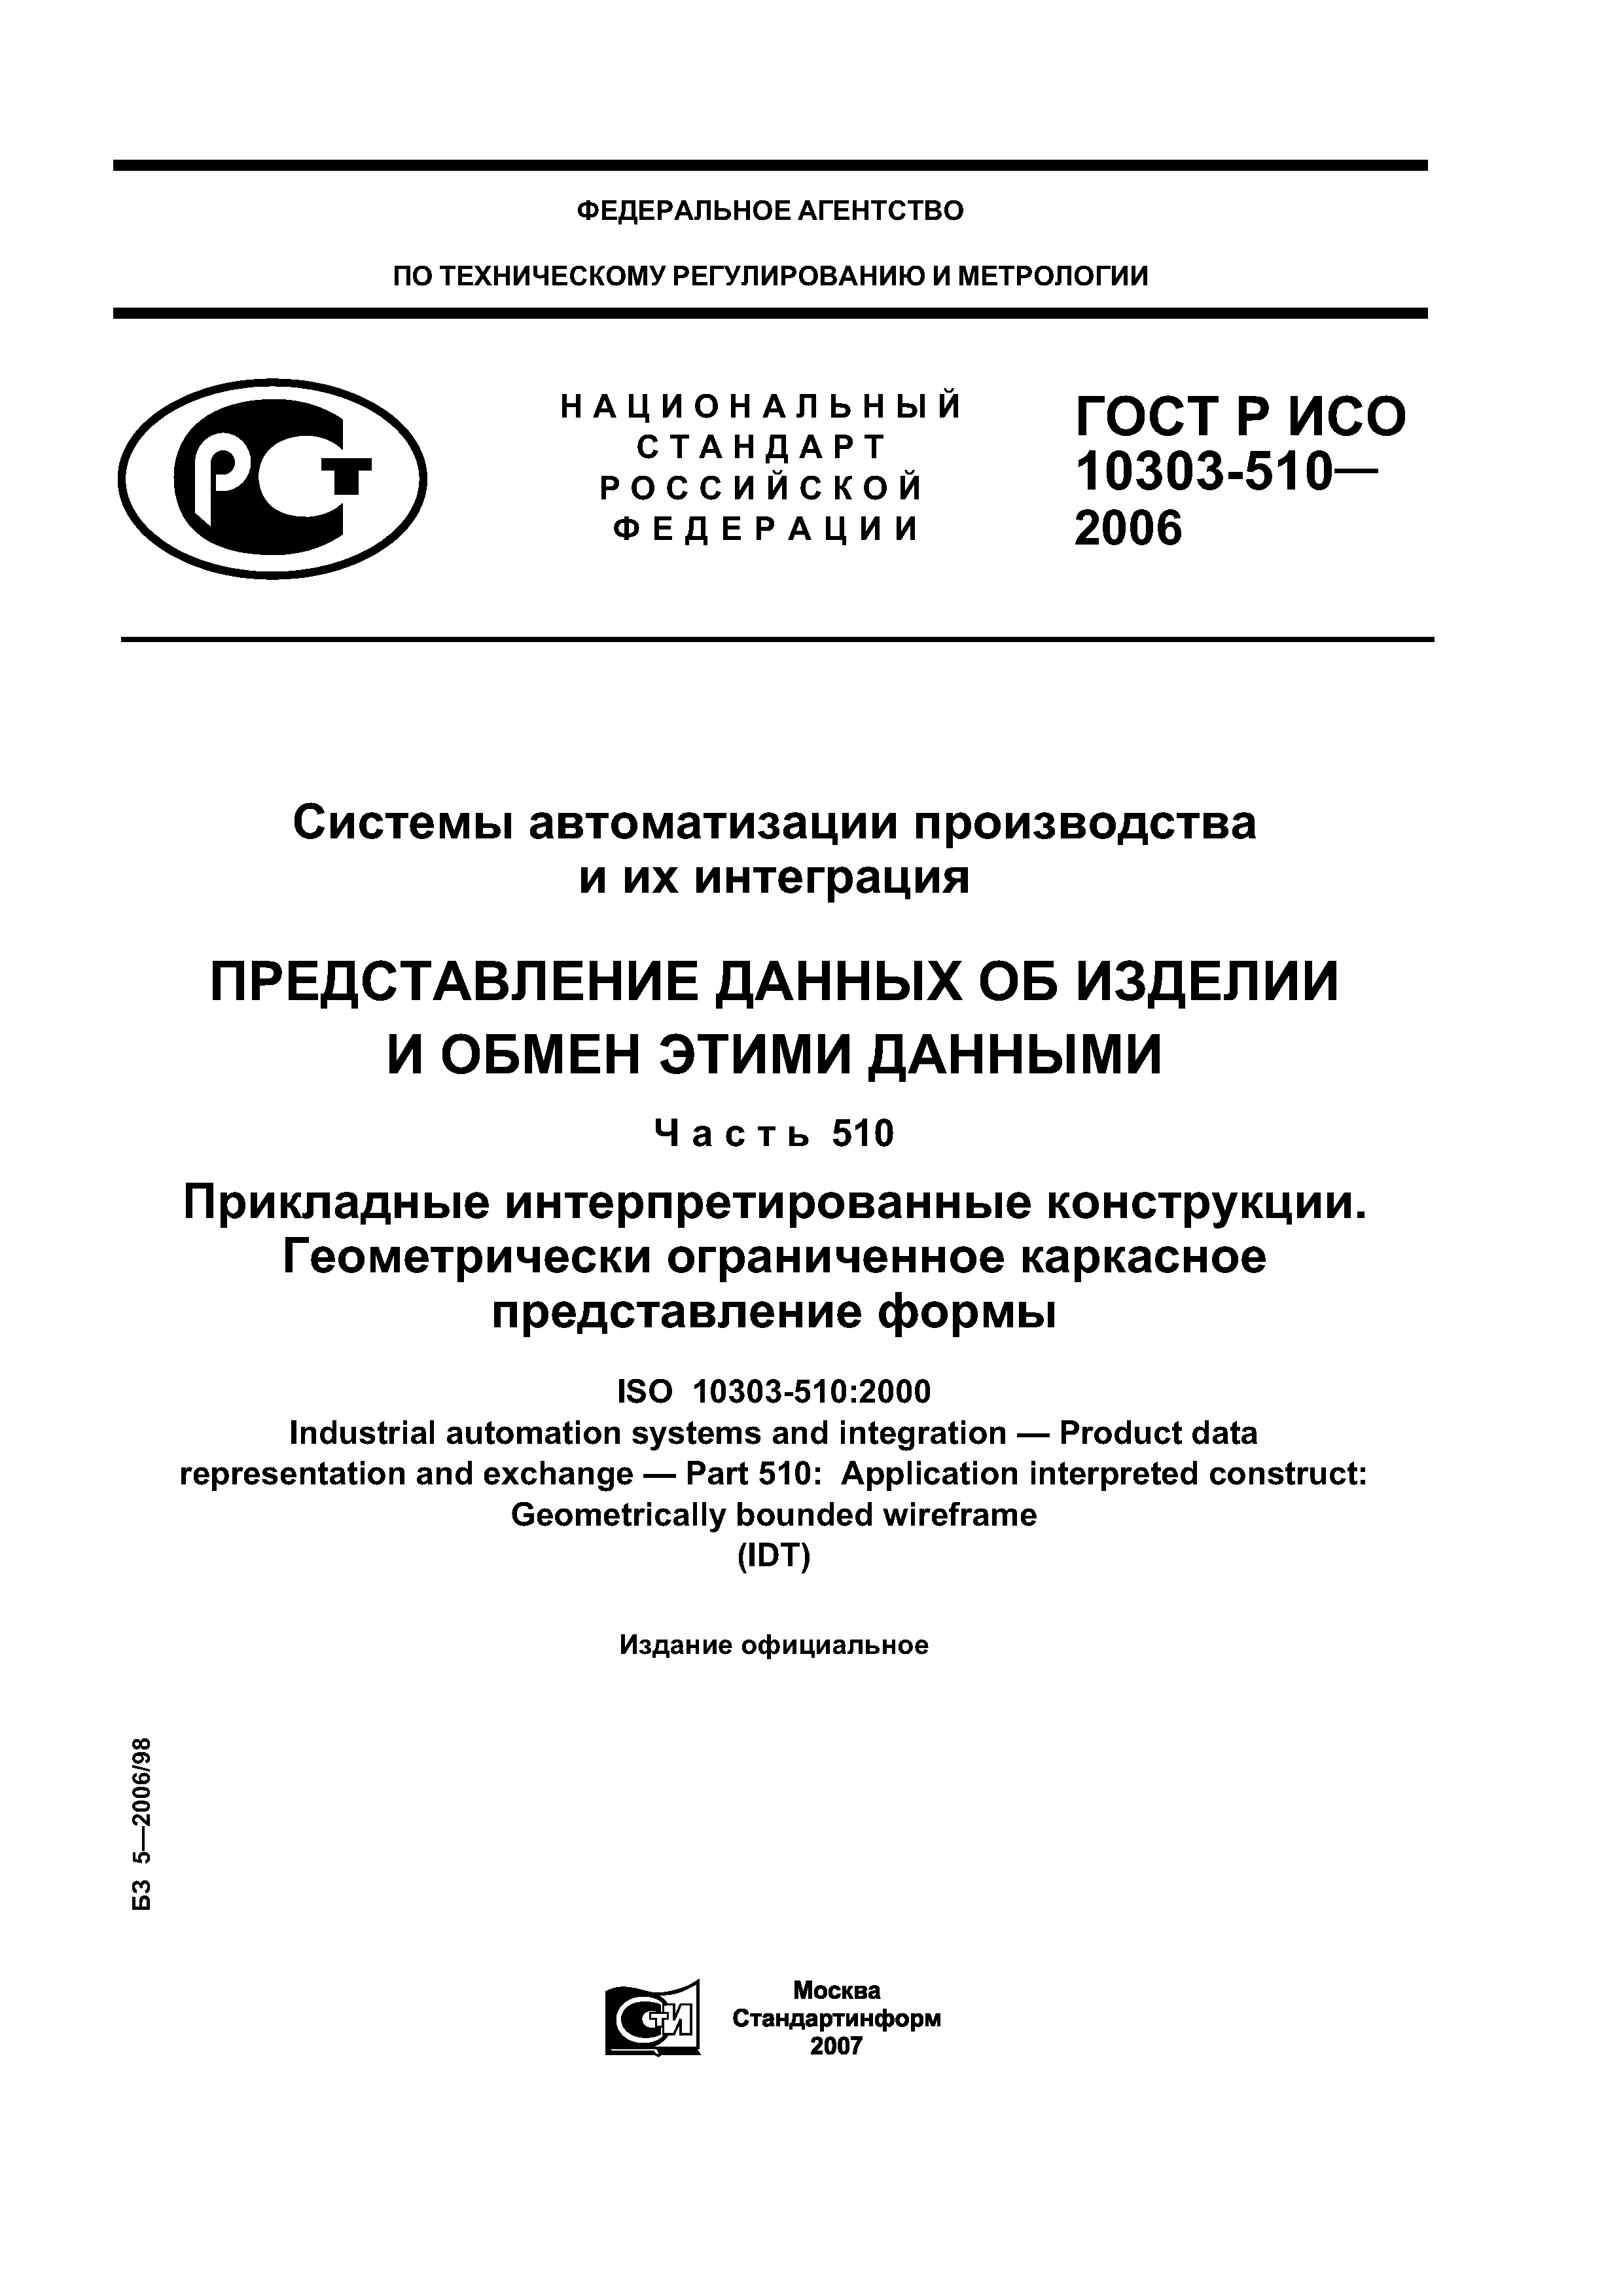 ГОСТ Р ИСО 10303-510-2006